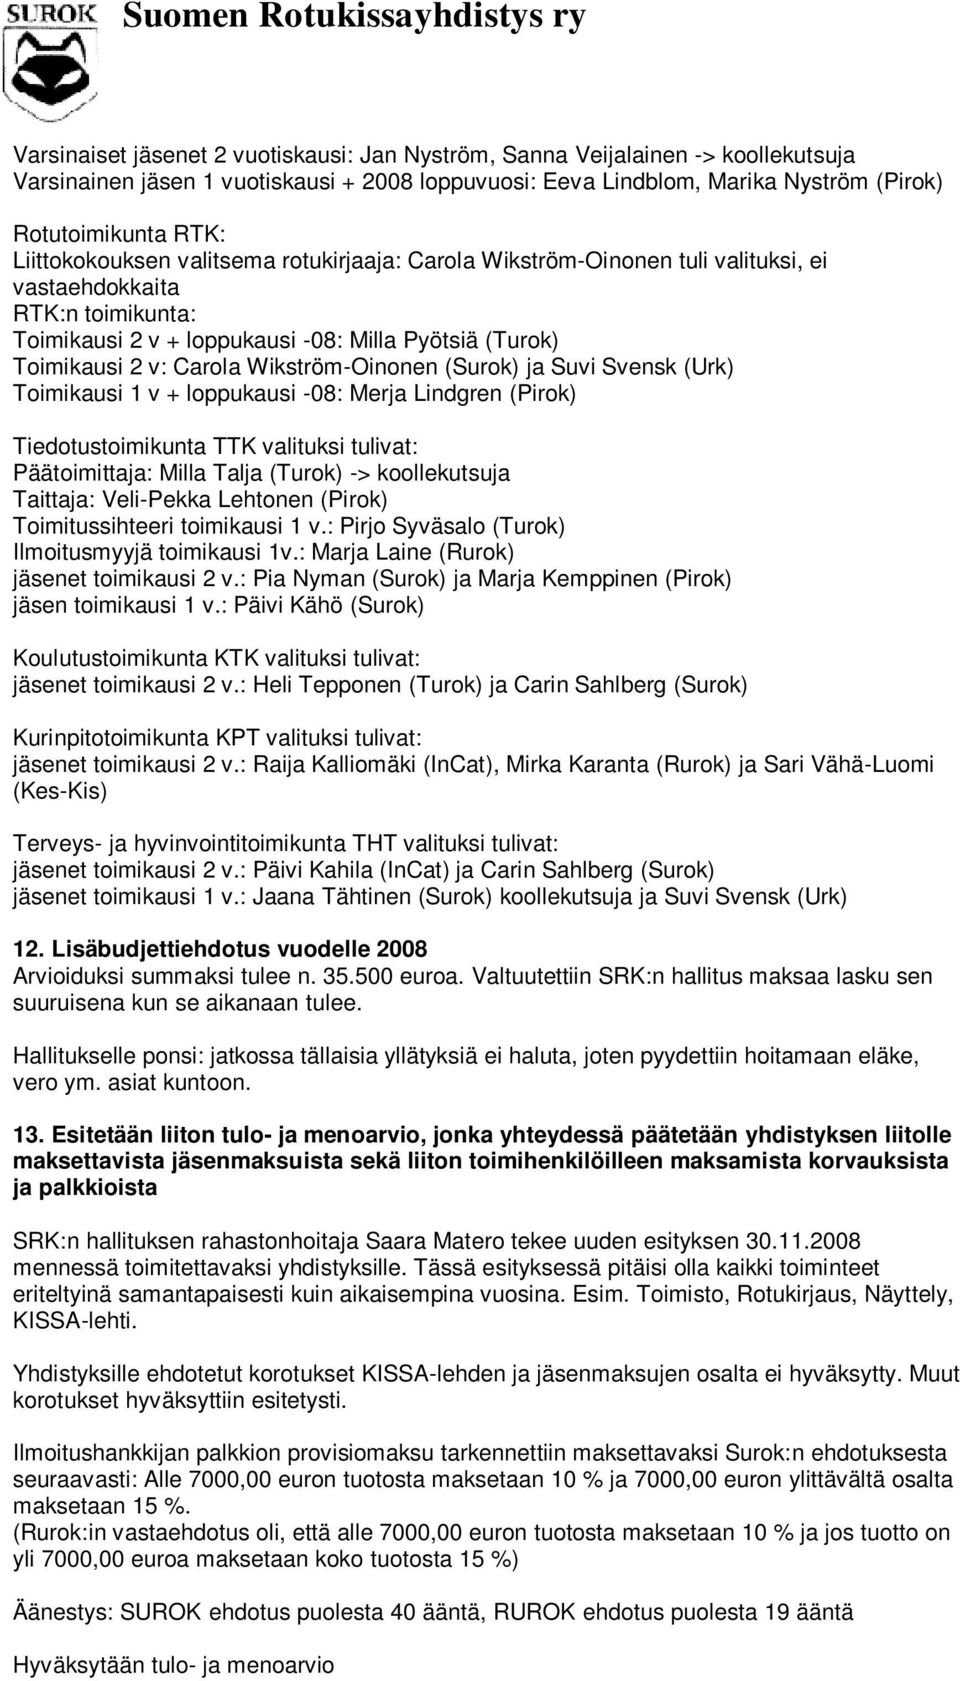 Wikström-Oinonen (Surok) ja Suvi Svensk (Urk) Toimikausi 1 v + loppukausi -08: Merja Lindgren (Pirok) Tiedotustoimikunta TTK valituksi tulivat: Päätoimittaja: Milla Talja (Turok) -> koollekutsuja